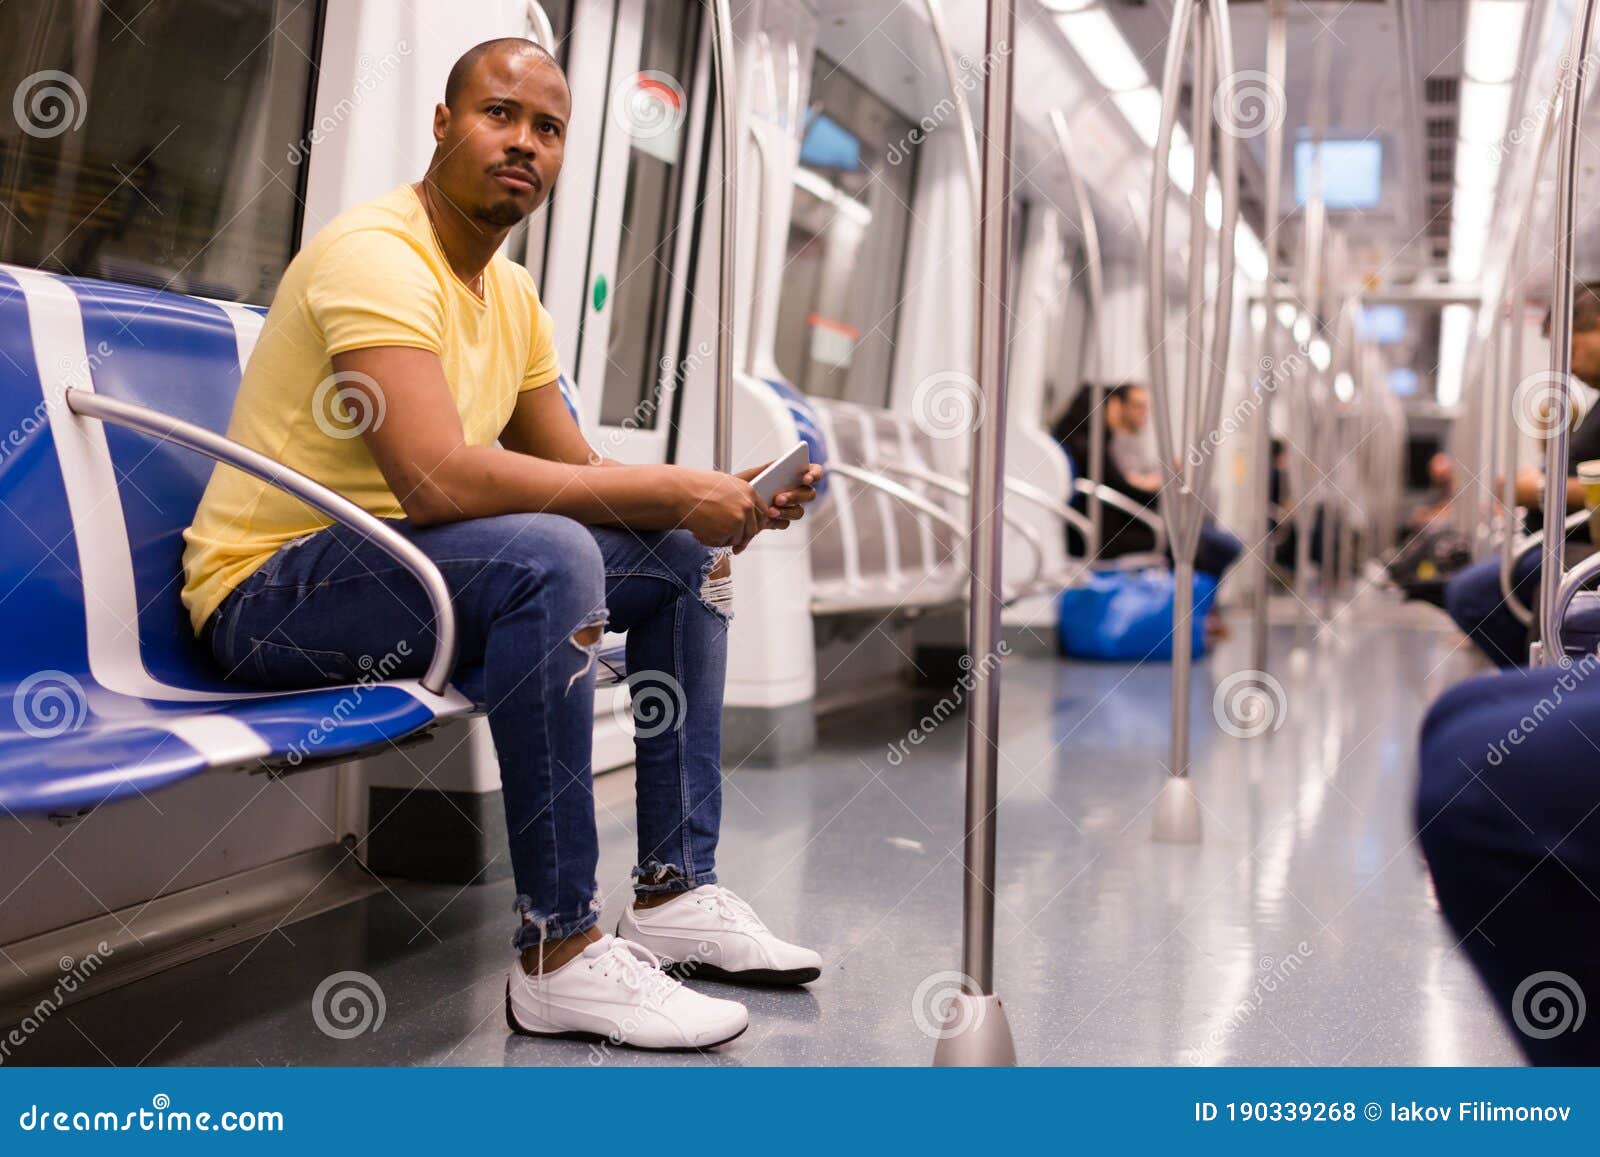 Arriba 50+ imagen man in metro